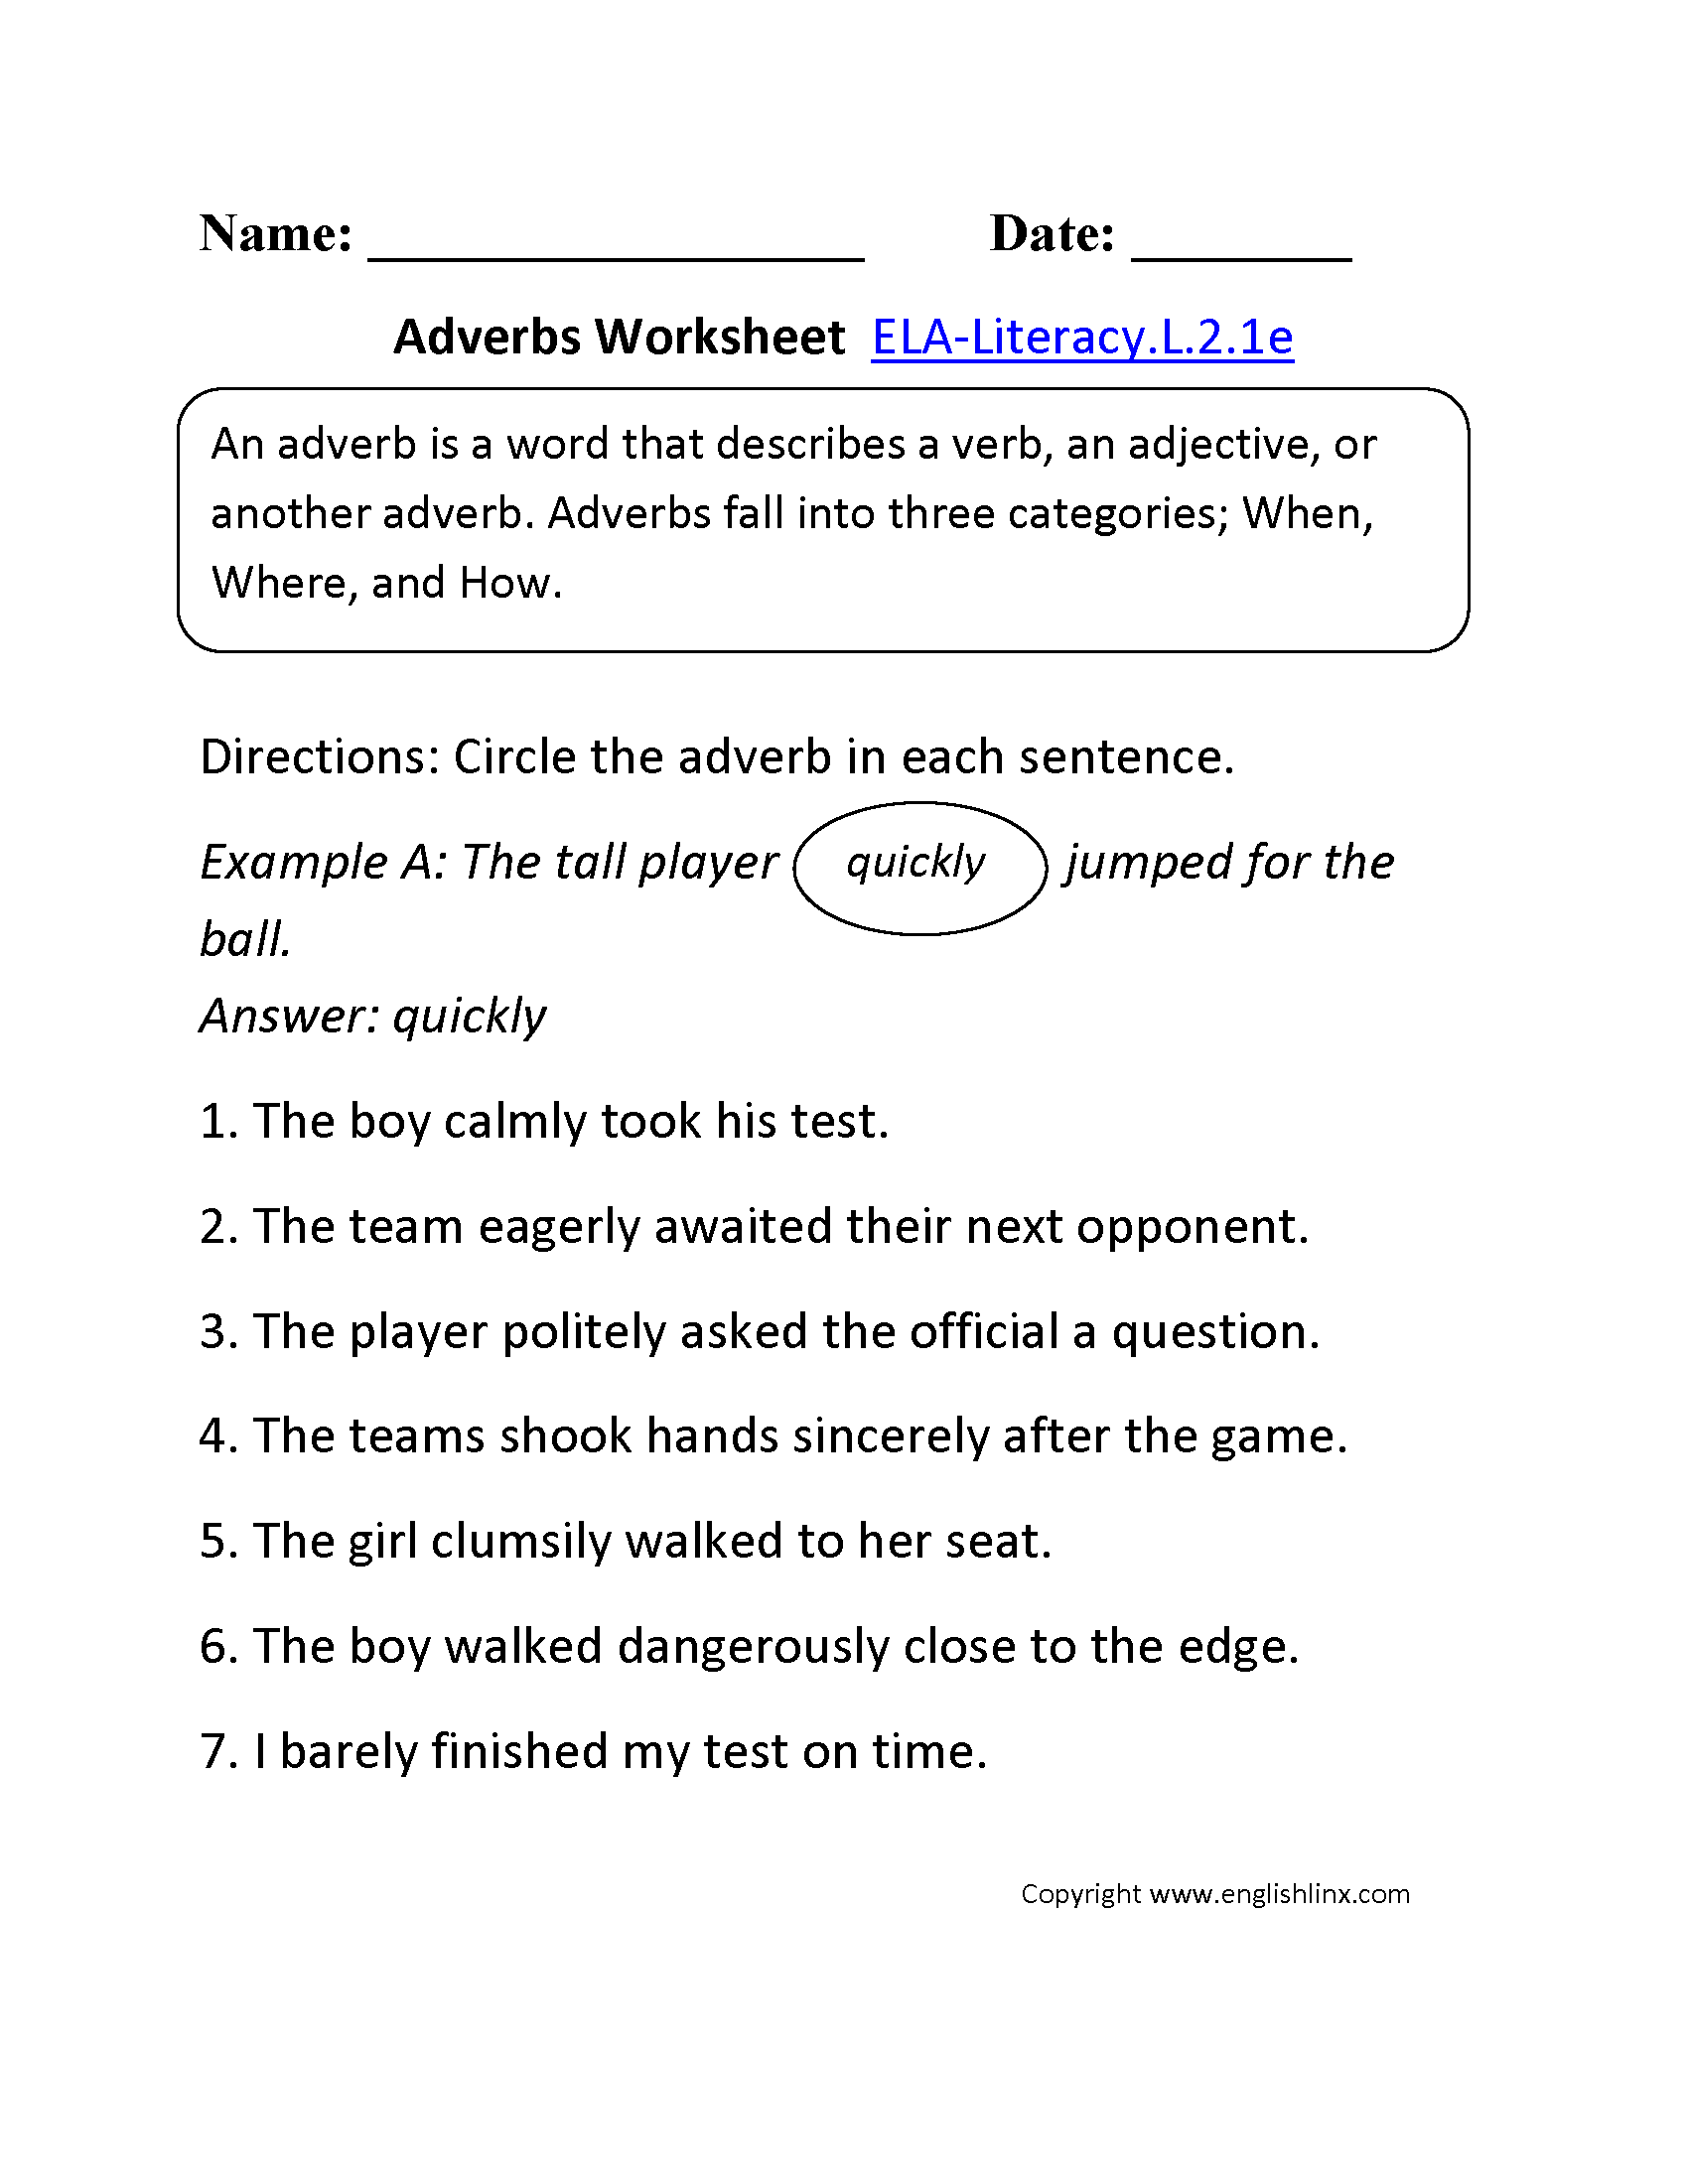 free-adverb-worksheet-2nd-grade-worksheets-grammar-worksheets-third-grade-grammar-worksheets